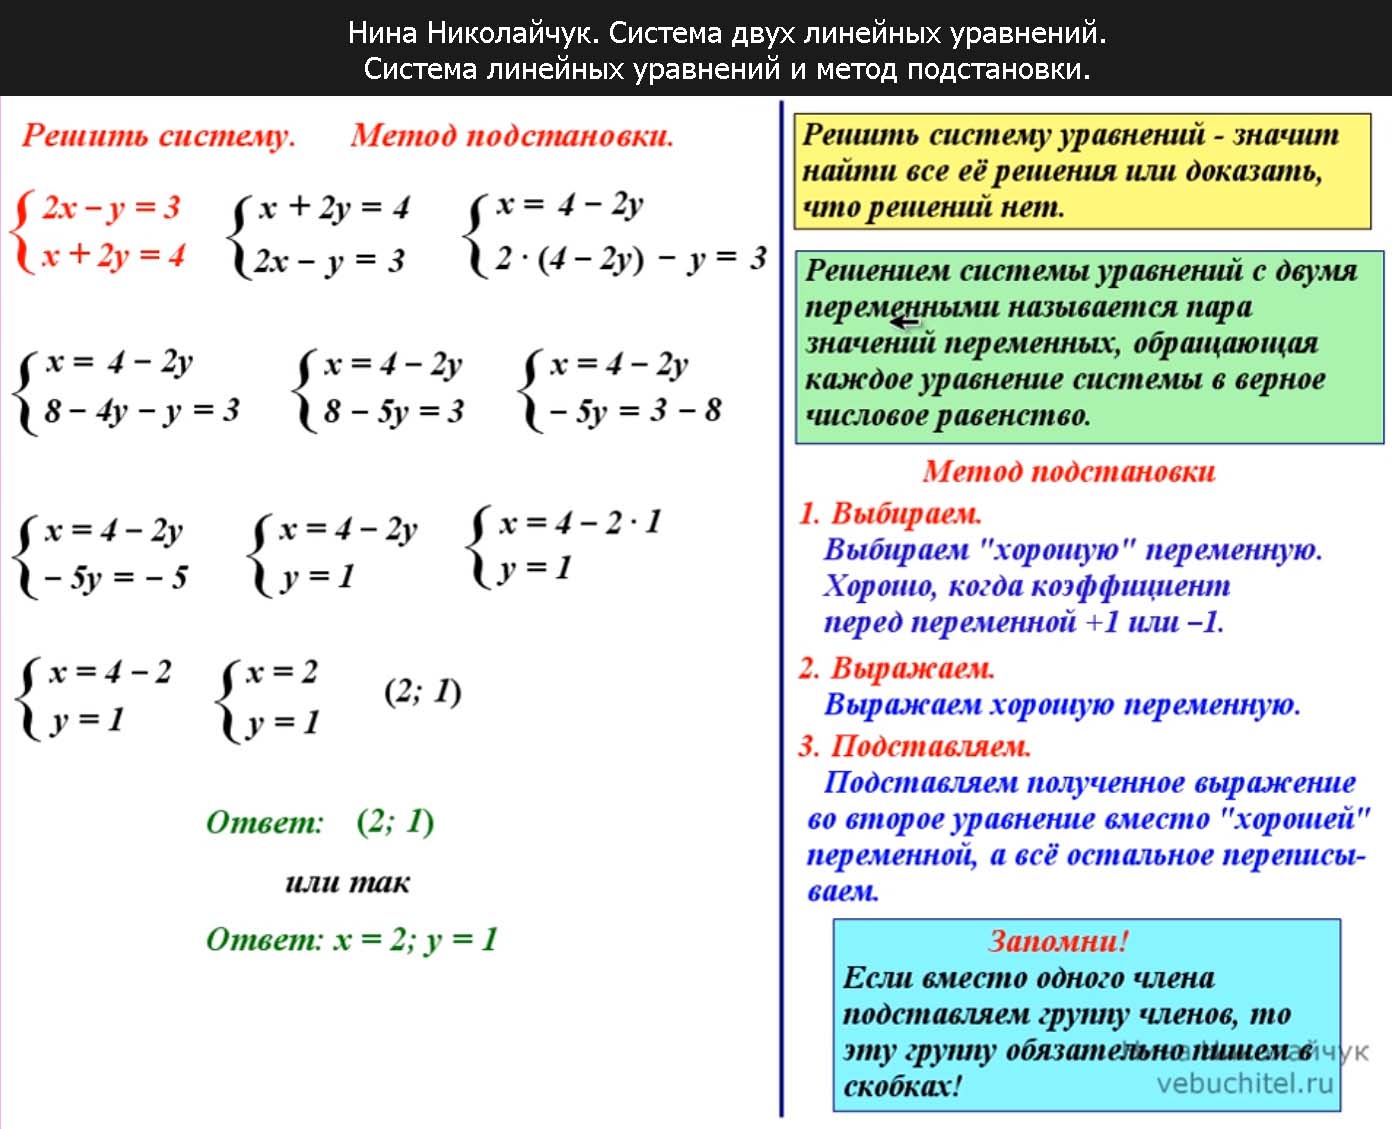 Алгоритм решения уравнений, формулы и примеры